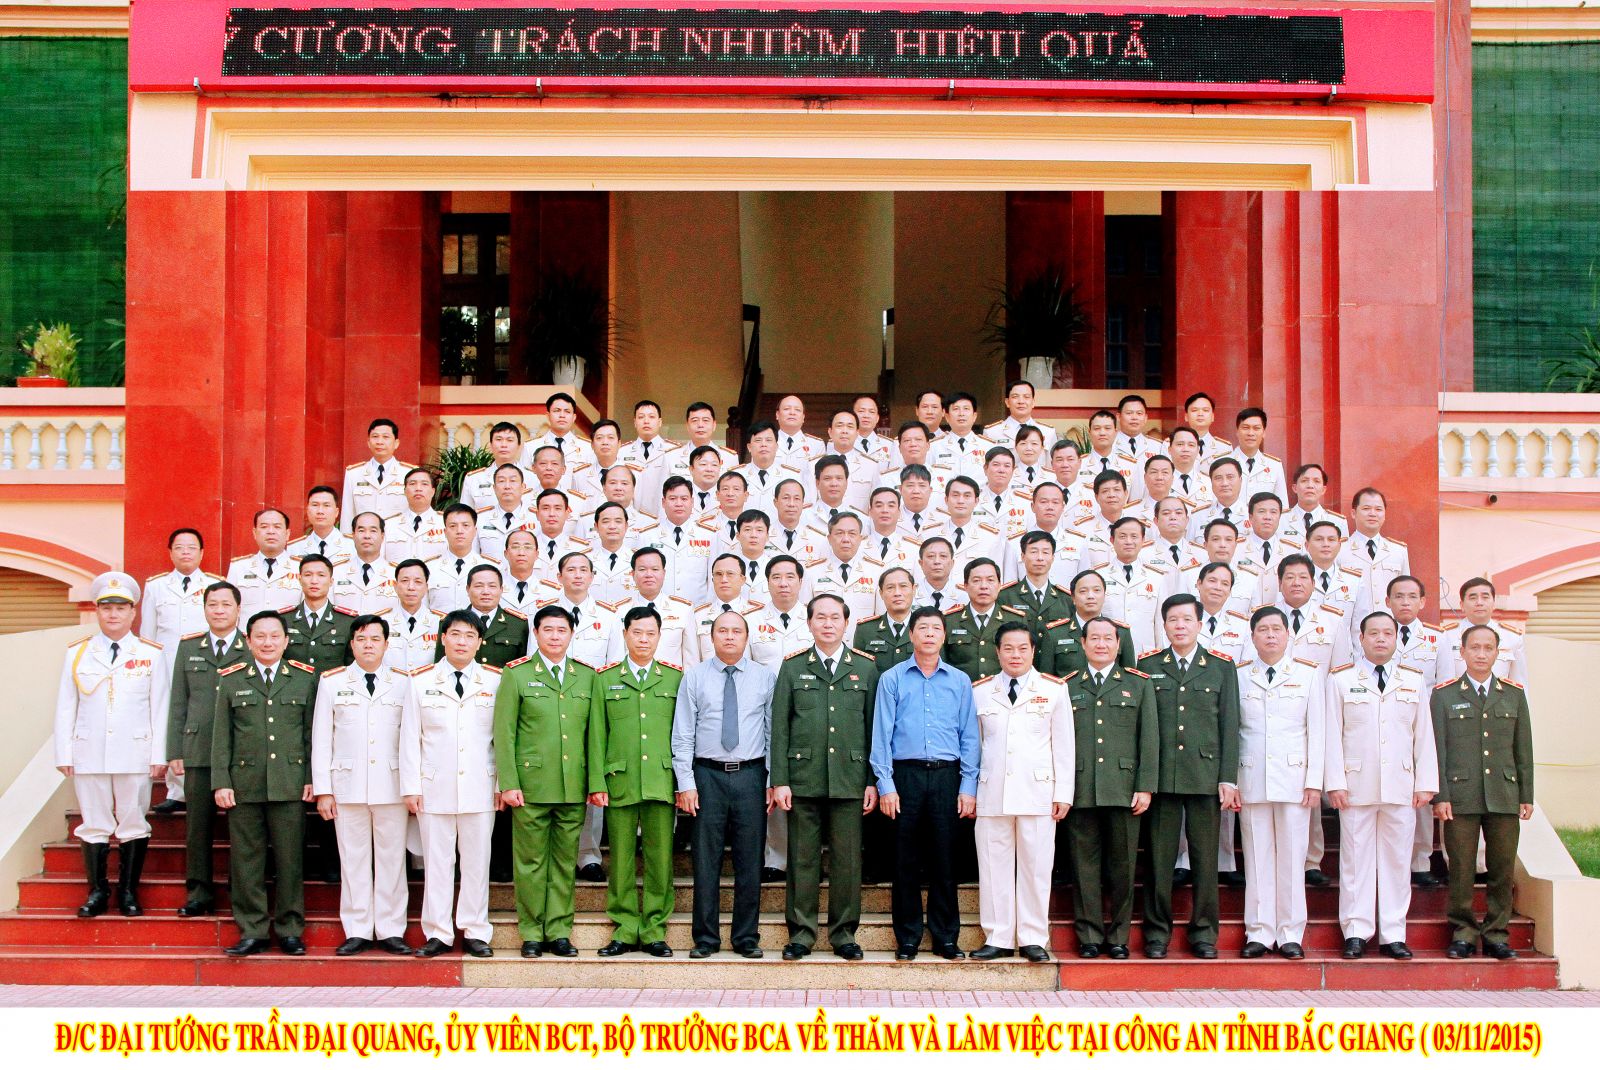 Đc Đại tướng Trần Đại Quang, Ủy viên BCT, Bộ trưởng BCA chụp ảnh lưu niệm tại trụ sở CAT Bắc Giang